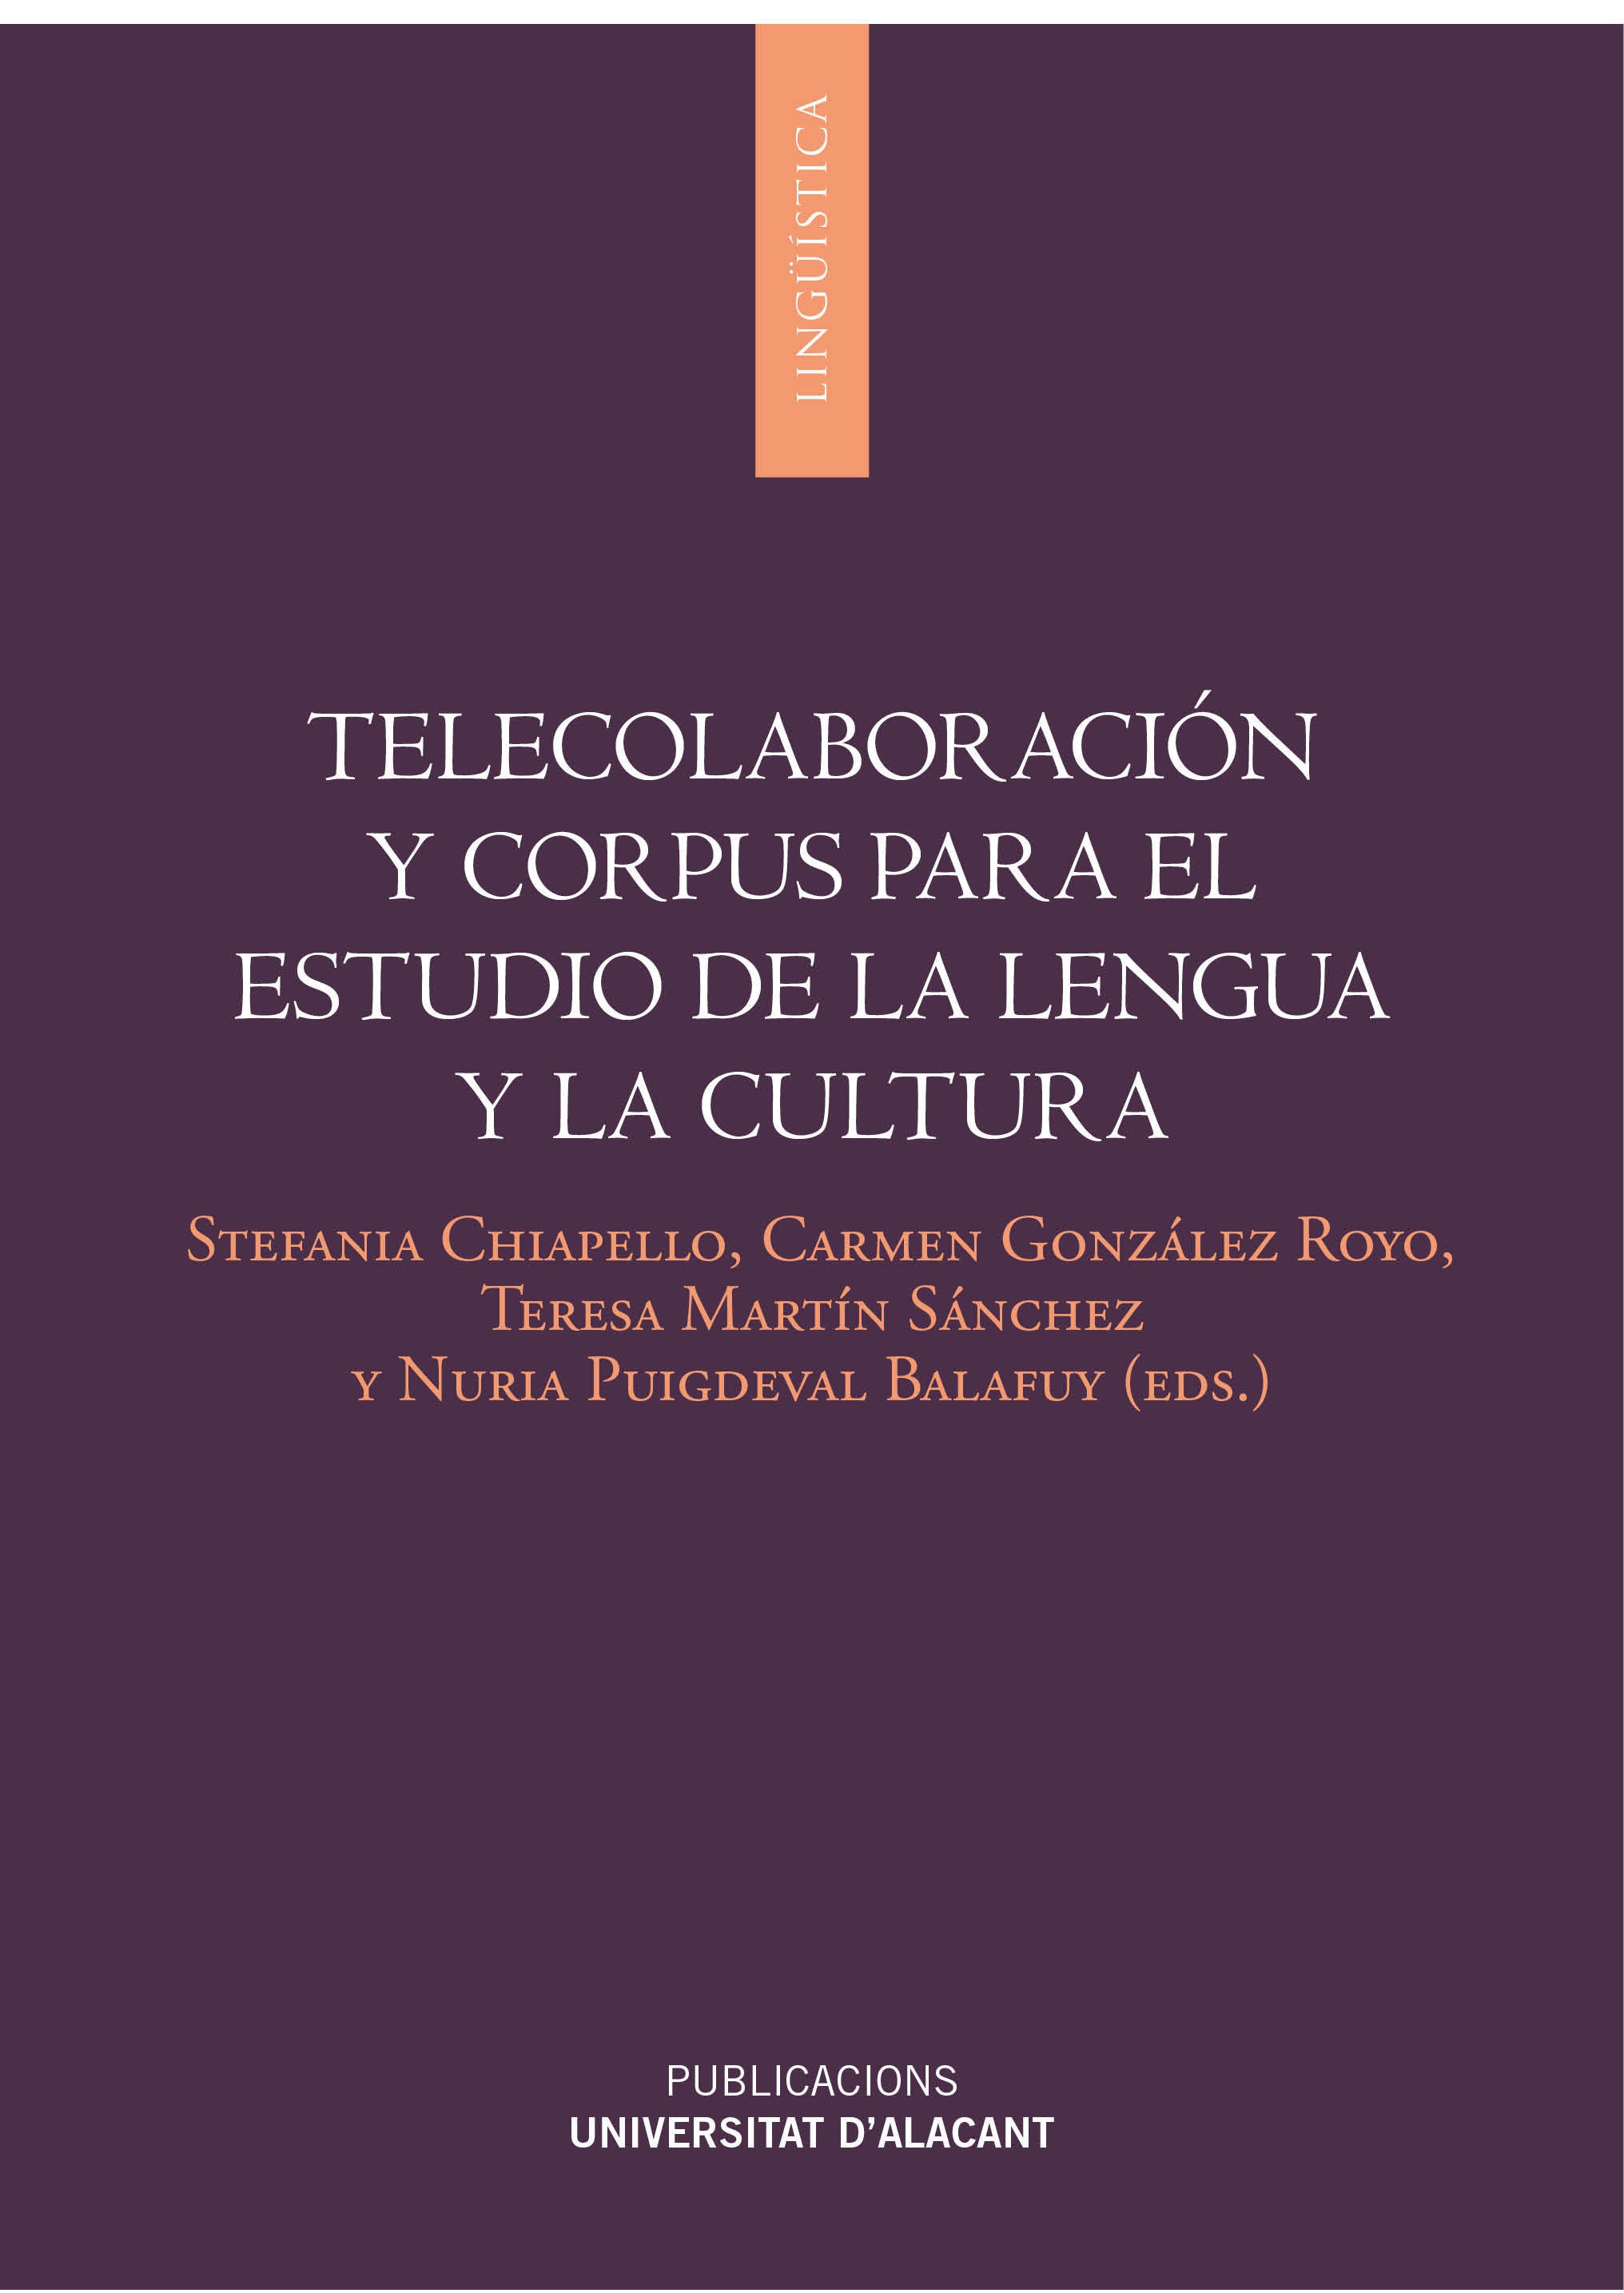 TelecolaboraciÃ³n y corpus para el estudio de lengua y cultura